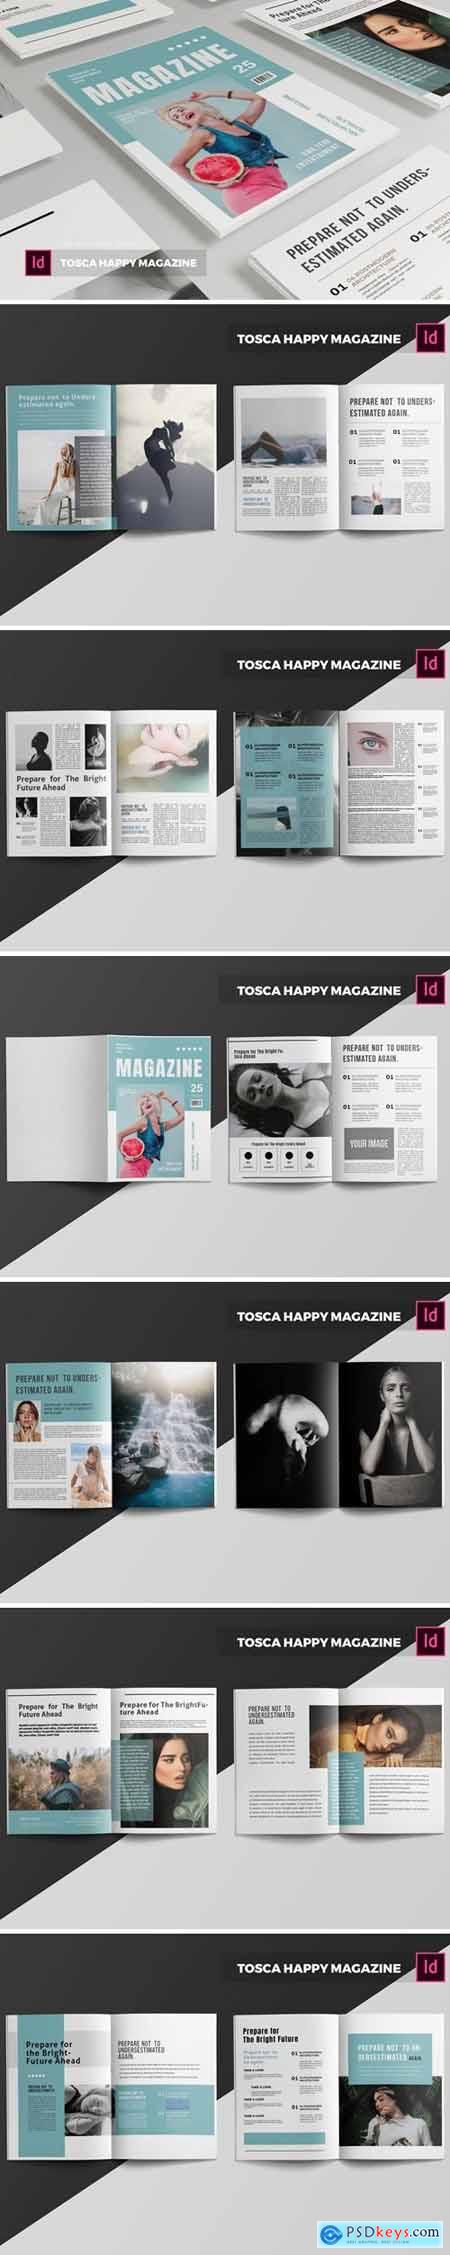 Tosca Happy Magazine Template